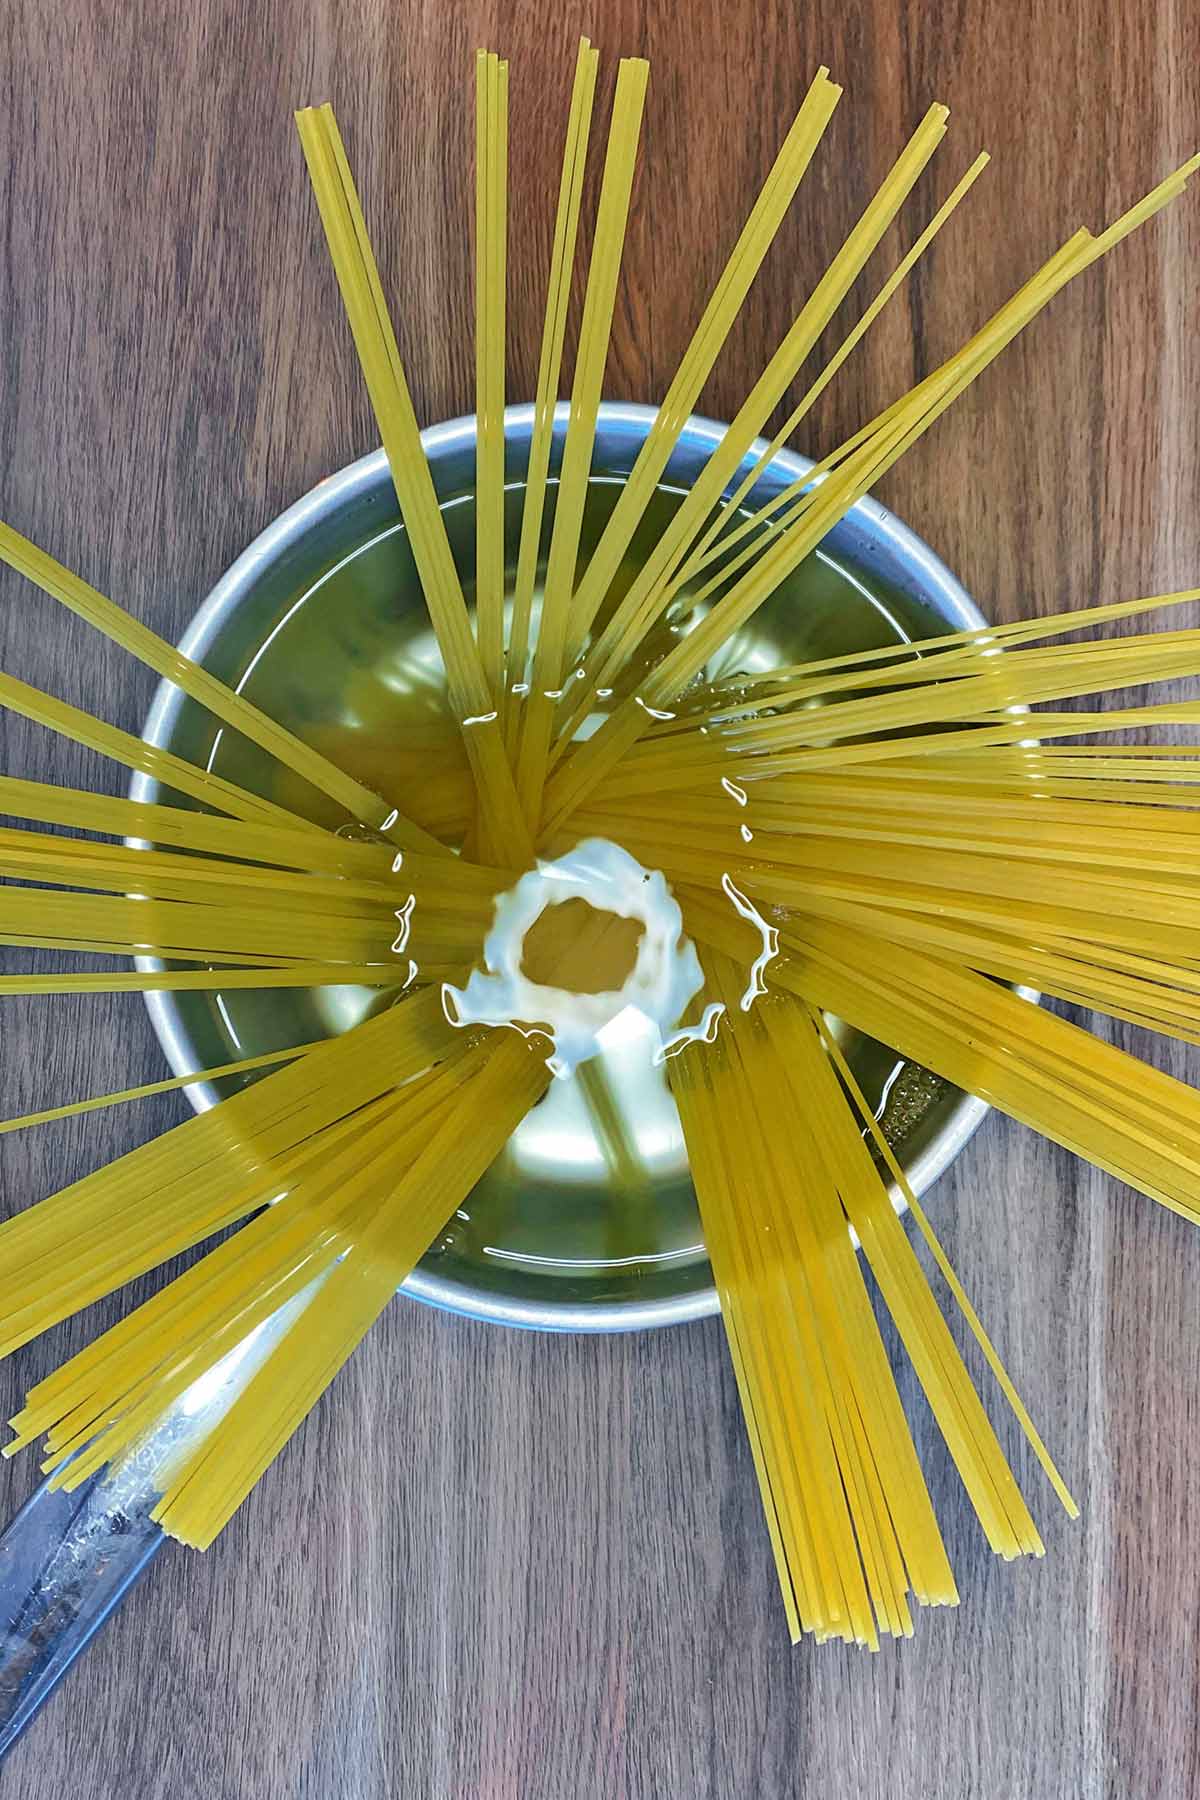 Spaghetti in a pan of water.